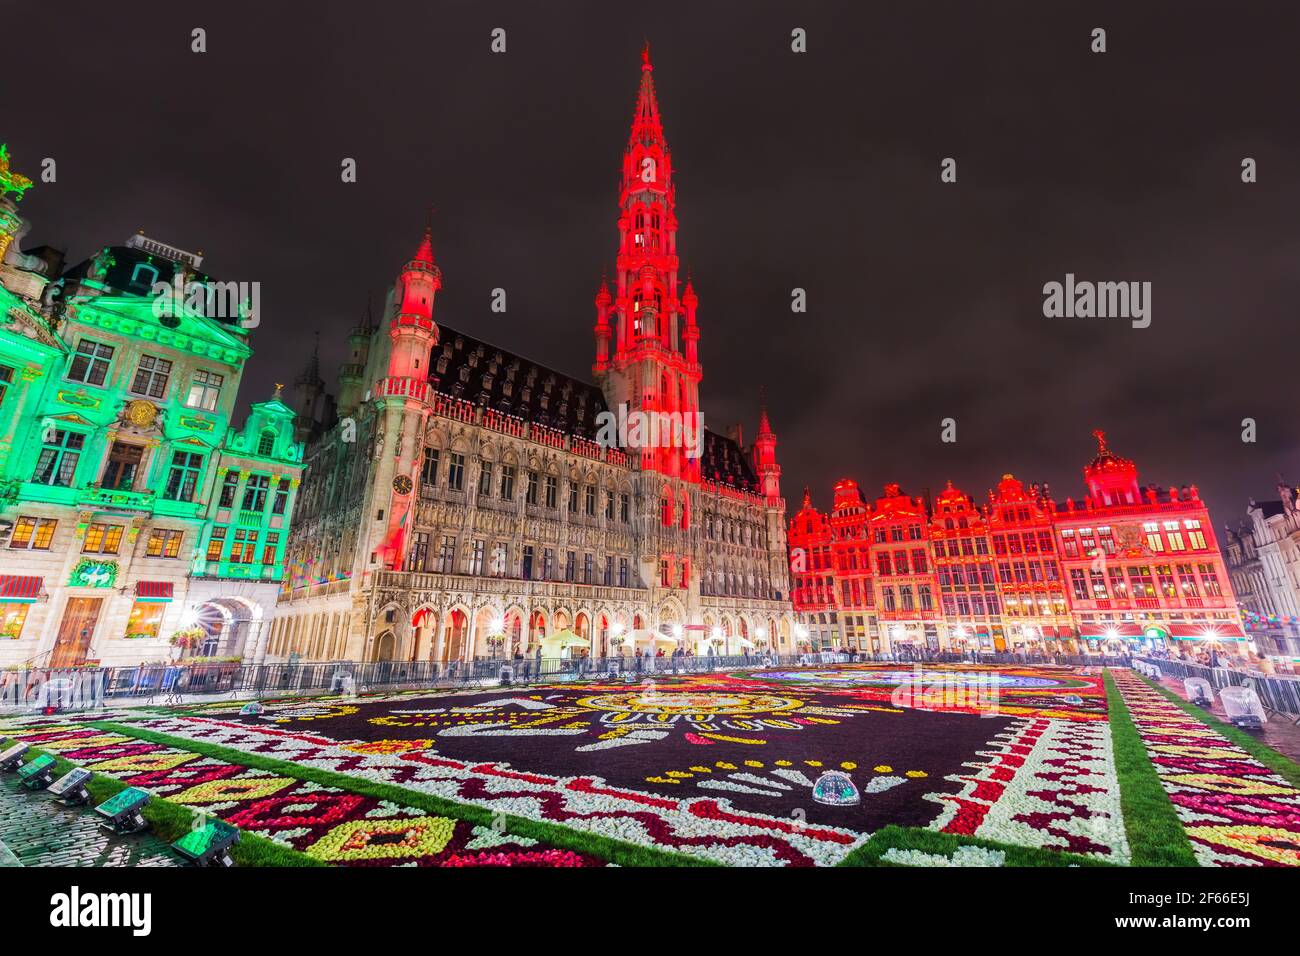 Brüssel, Belgien - 17. August 2018: Grand Place während Blütenteppich Festival. Das Thema dieses Jahres war Mexiko. Stockfoto